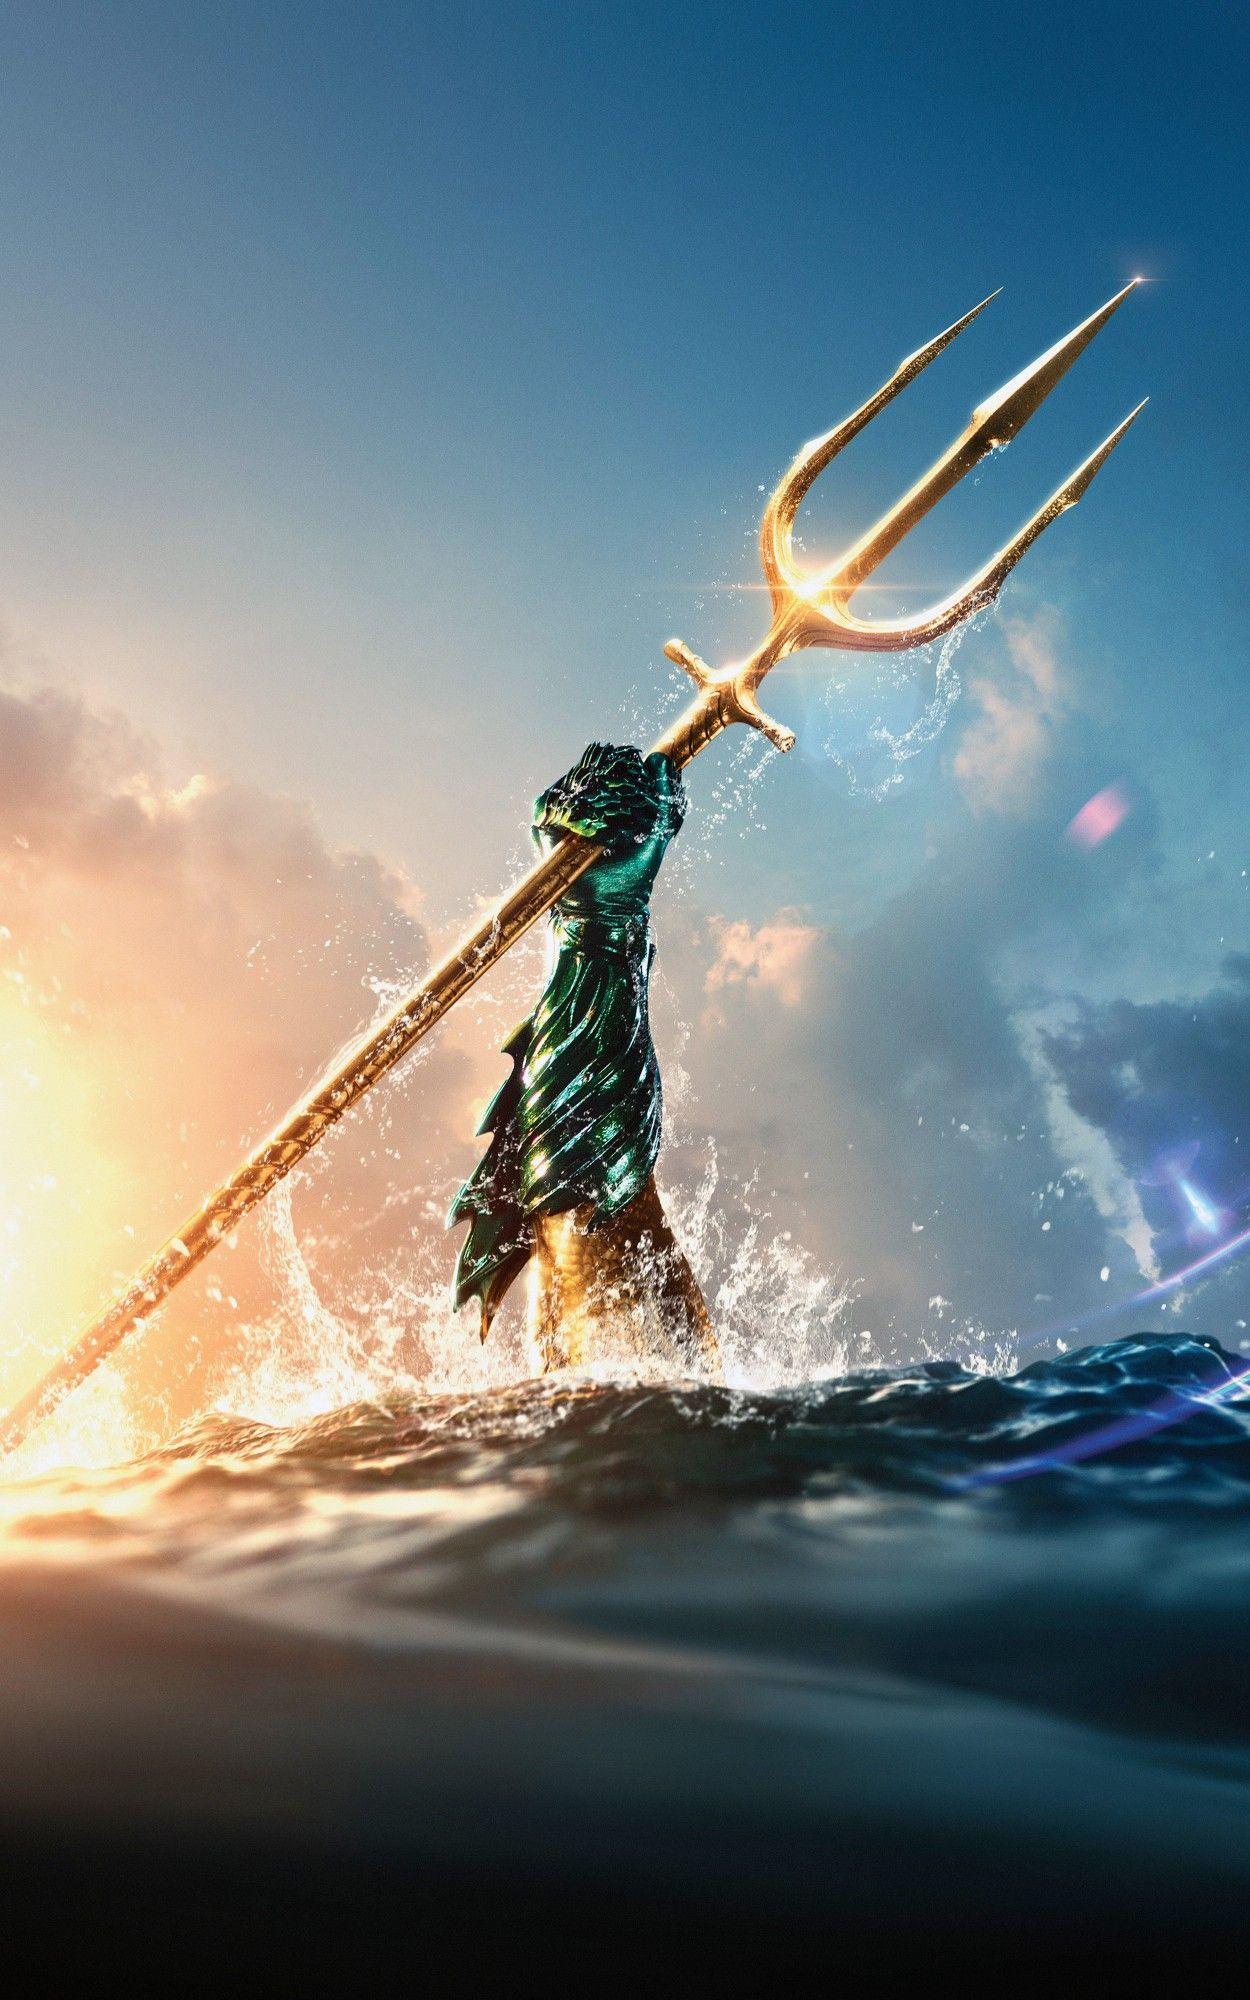 100+] Aquaman Wallpapers | Wallpapers.com